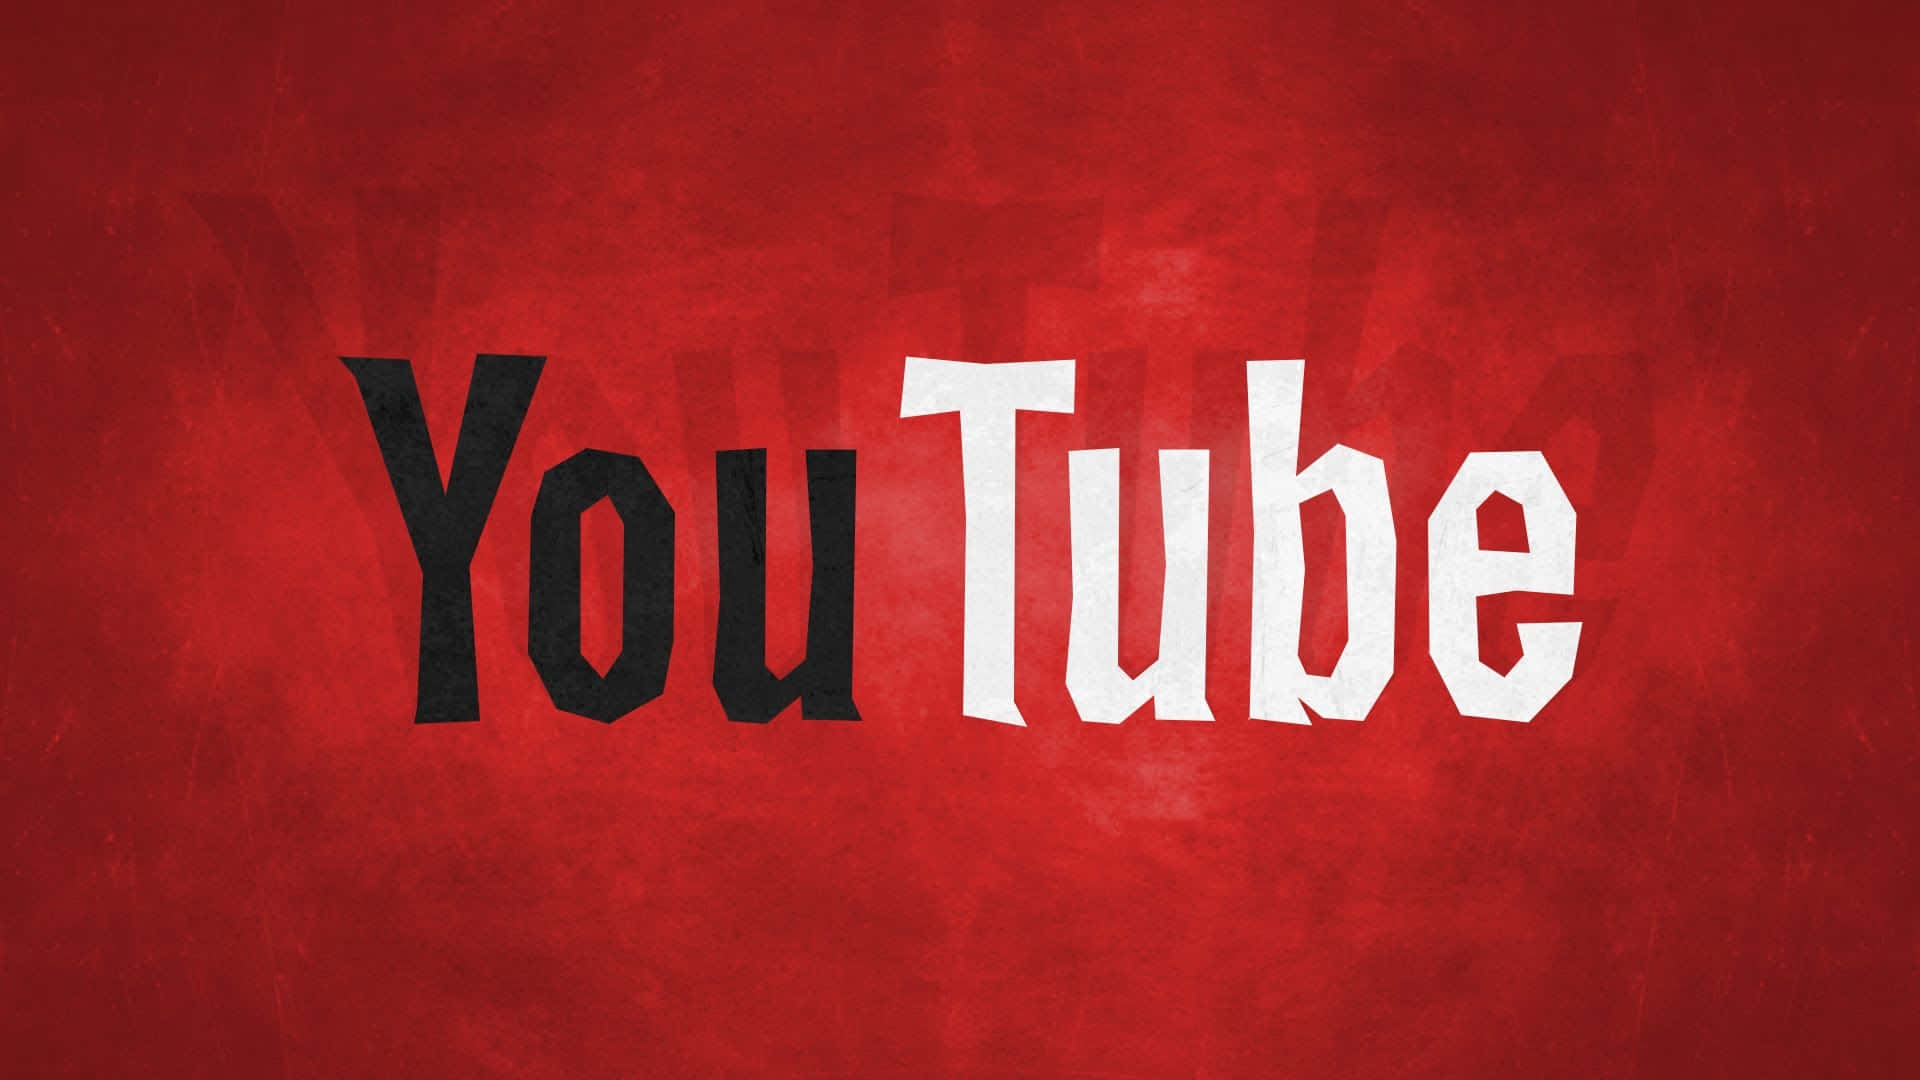 Logotipode Youtube Sobre Fondo Abstracto.